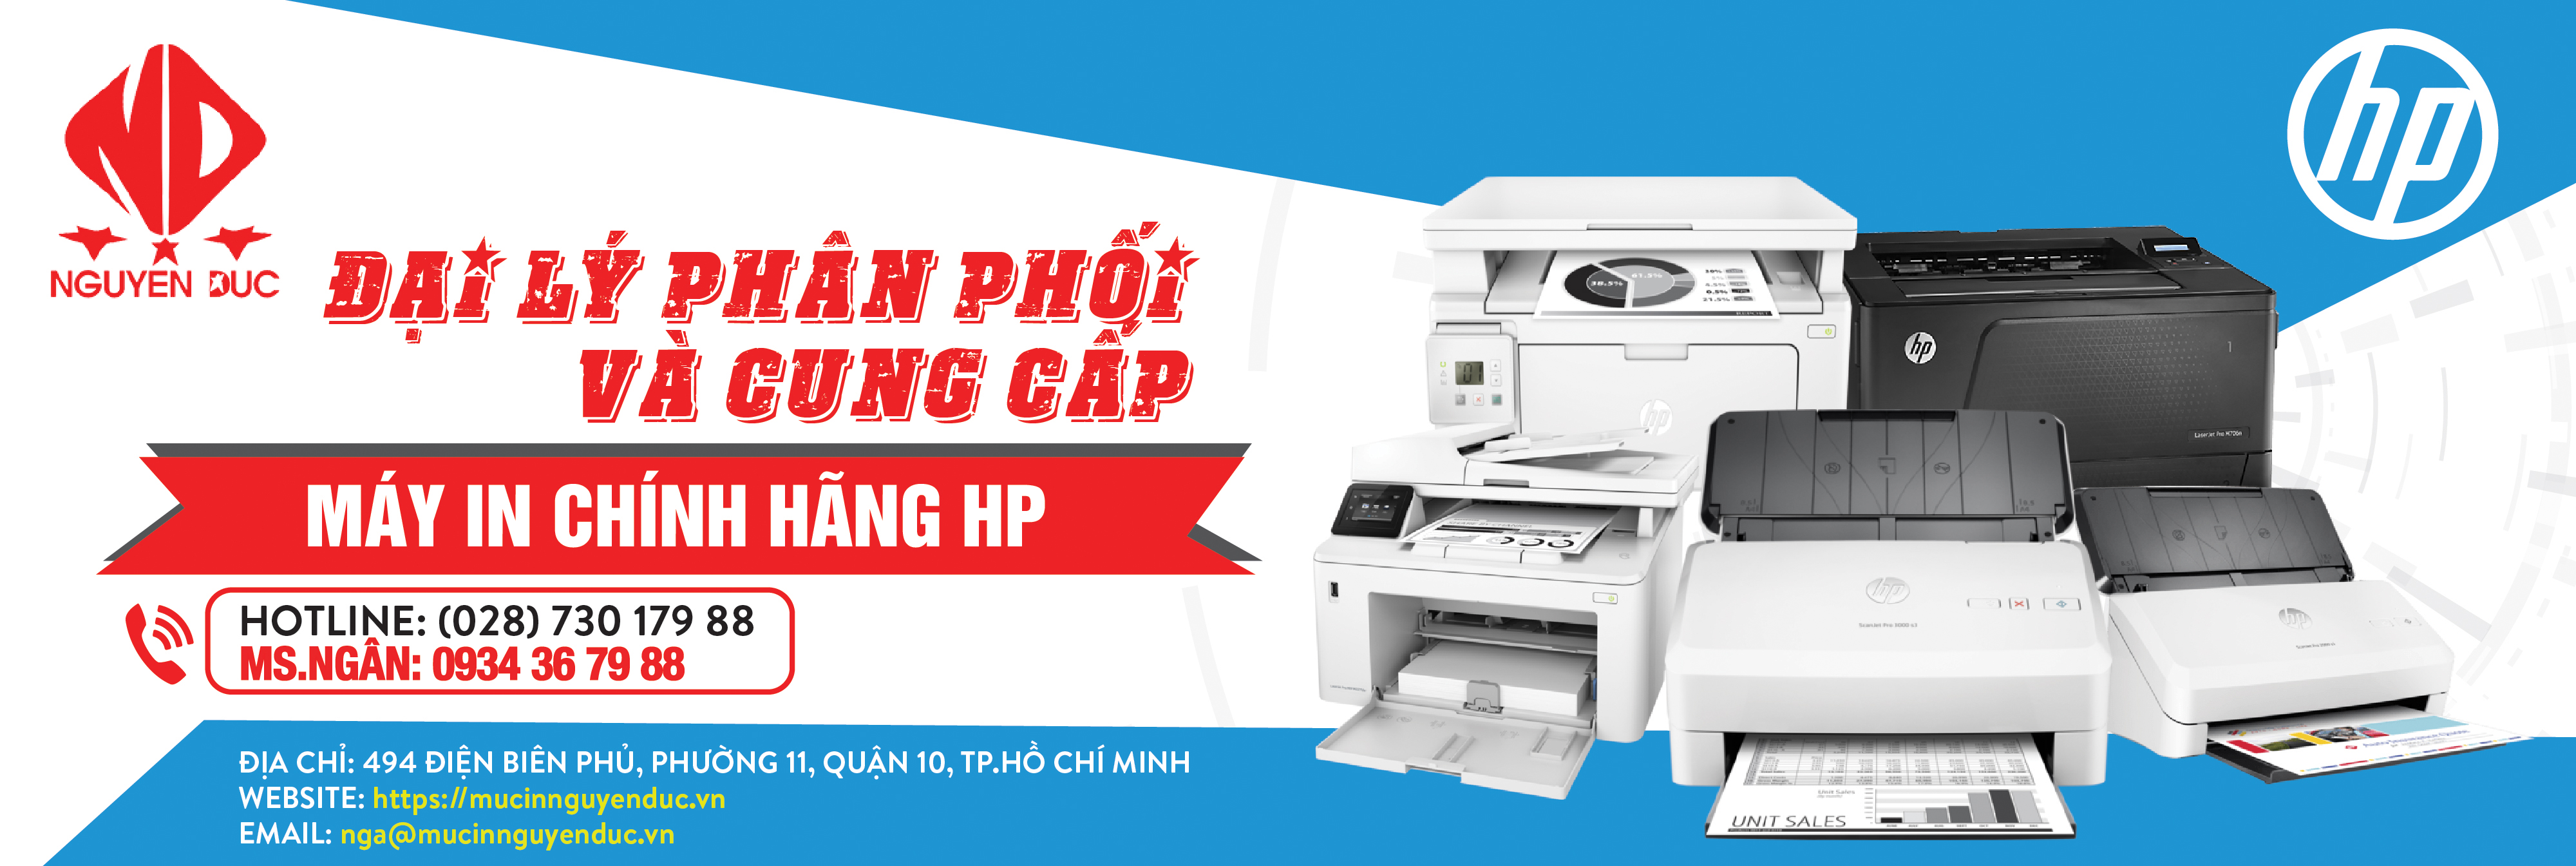 Đại lý phân phối máy quét tài liệu đảo mặt Epson WorkForce DS-570WII - chính hãng, giao hàng tại huyện Nhà Bè, thành phố Hồ Chí Minh